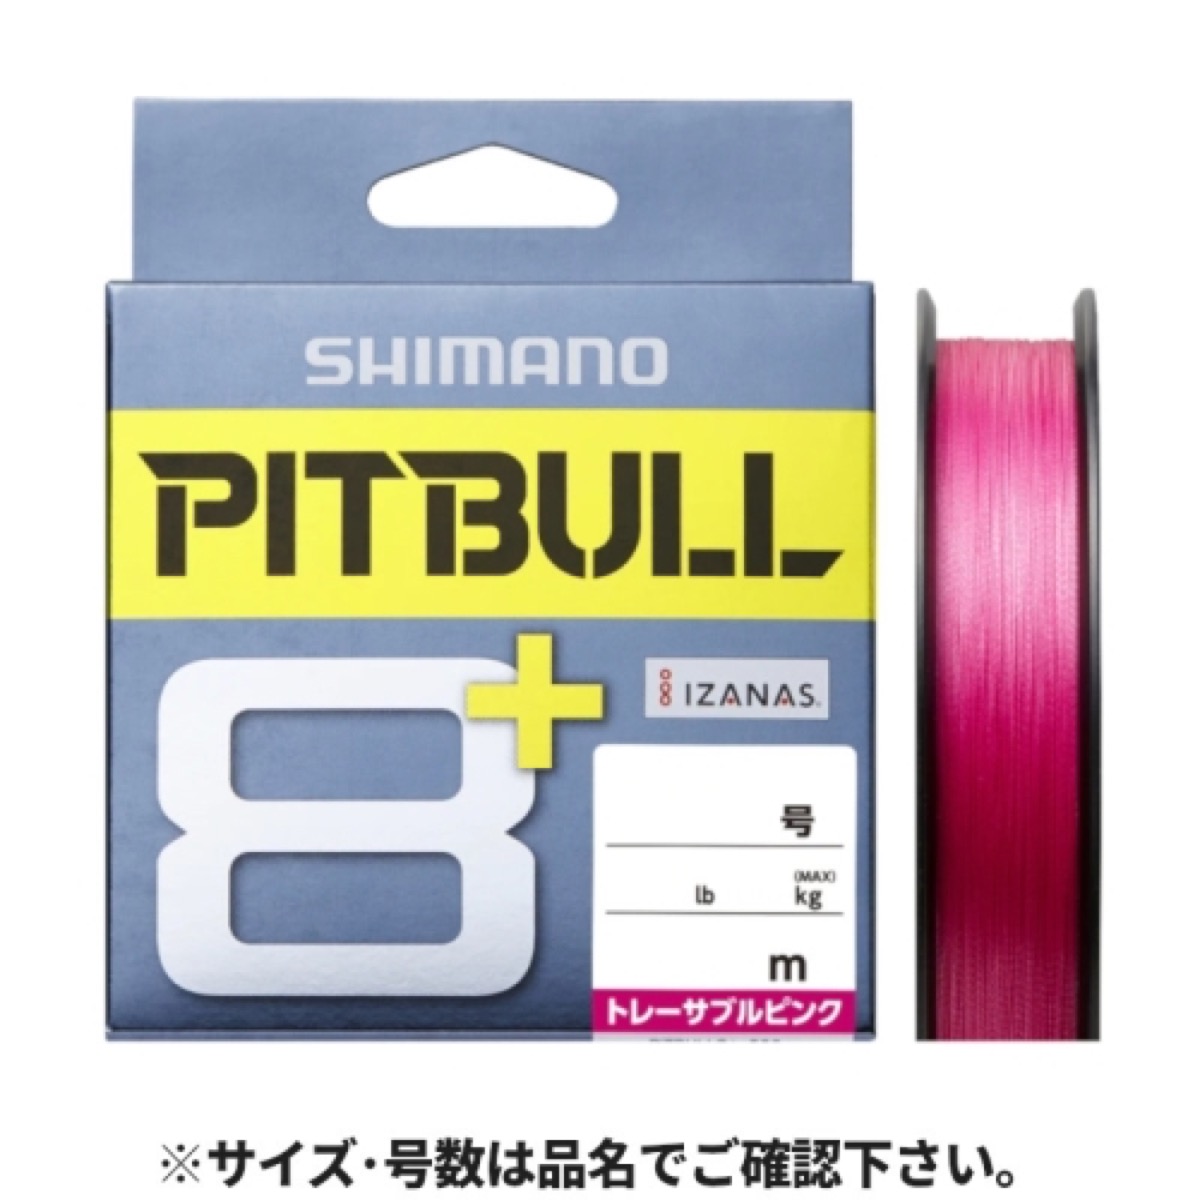 シマノ(SHIMANO) ピットブル8+ LD-M51T 150m 1.2号 トレーサブルピンク ネコポス(メール便)対象商品